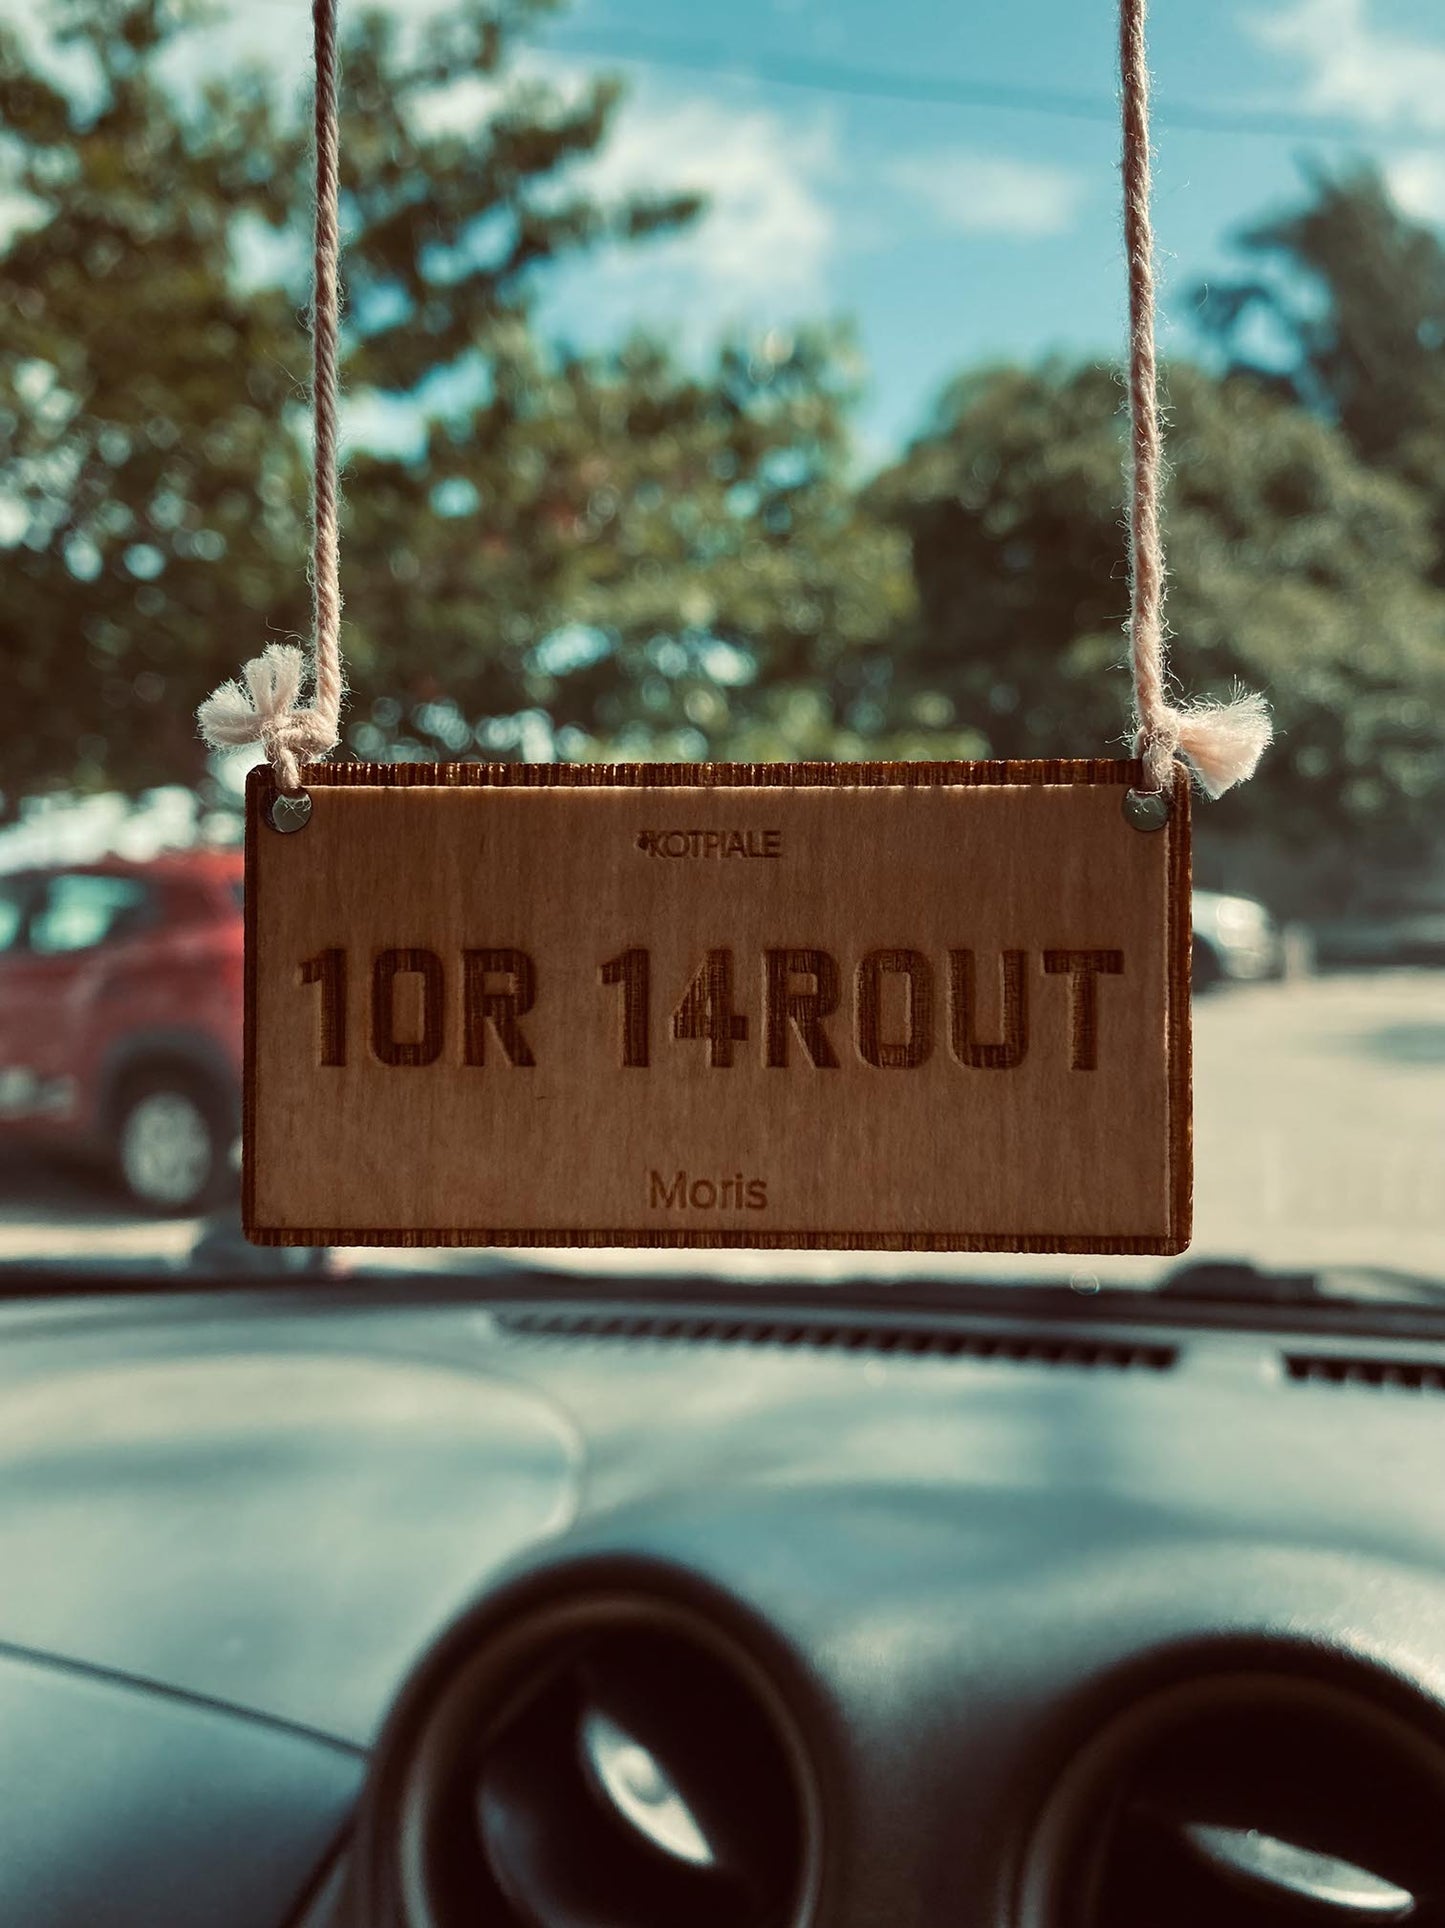 Car Hangers | LOR LAROUT